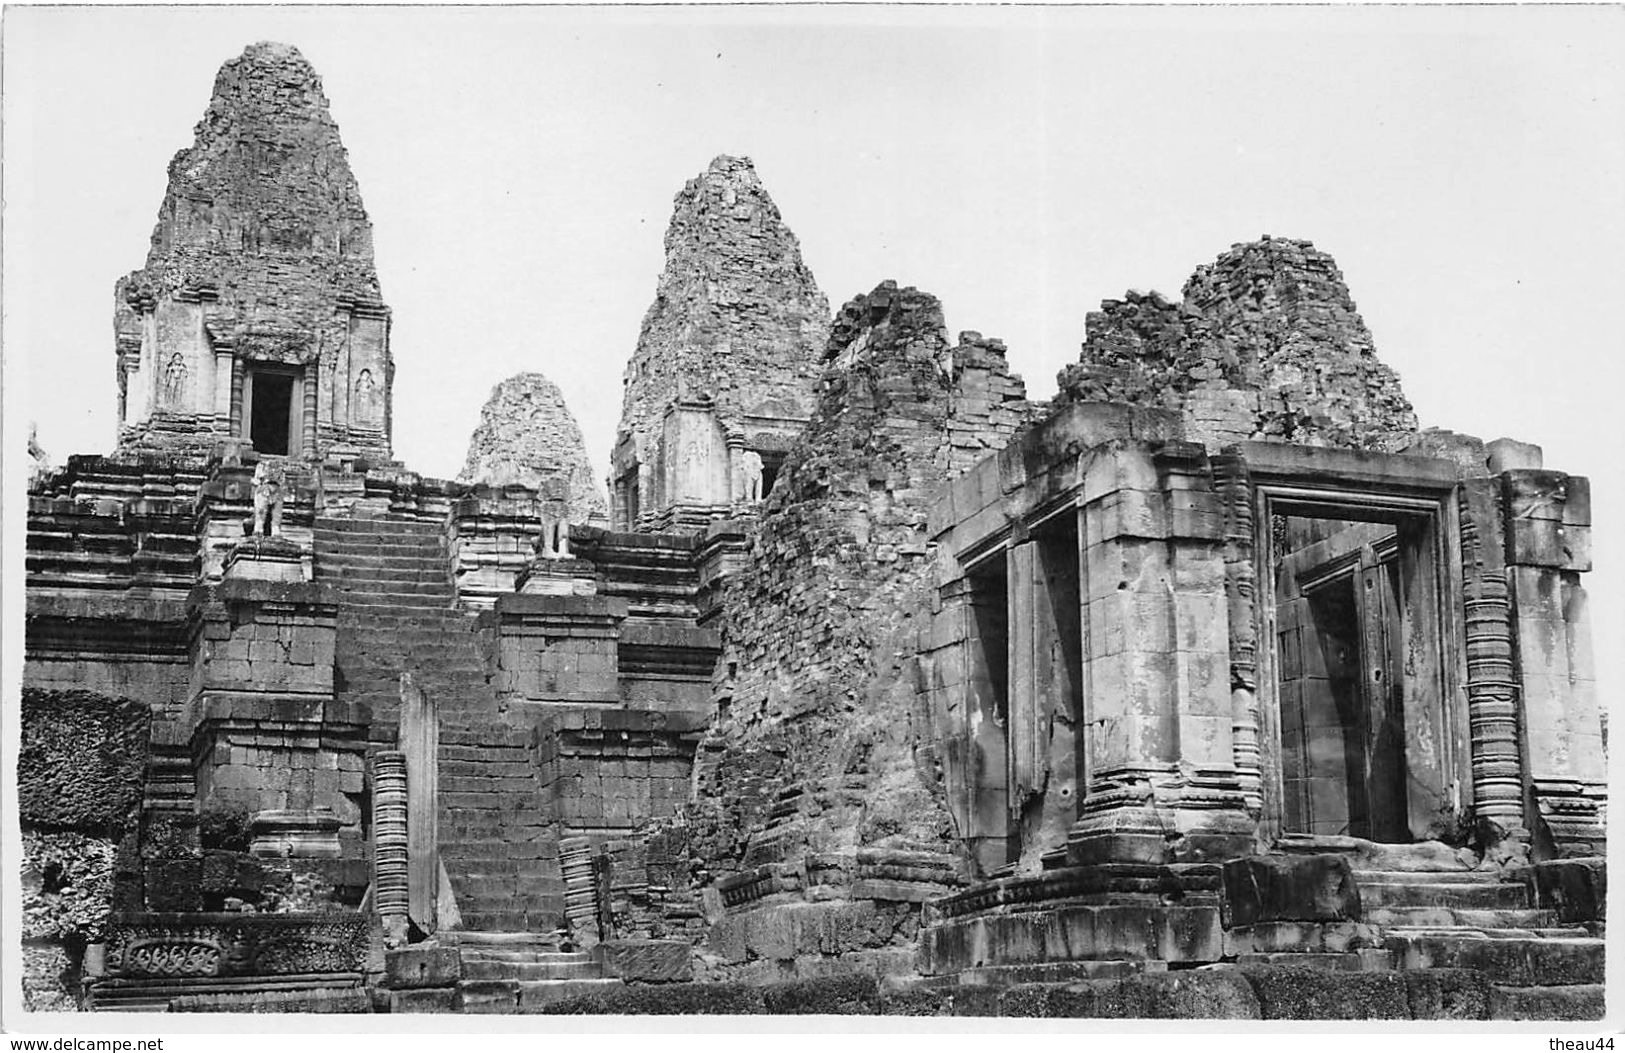 ¤¤  -  Carte-Photo Non Située   -  CAMBODGE  ??  -  Palais En Ruine , Statue  -  ¤¤ - Cambodge